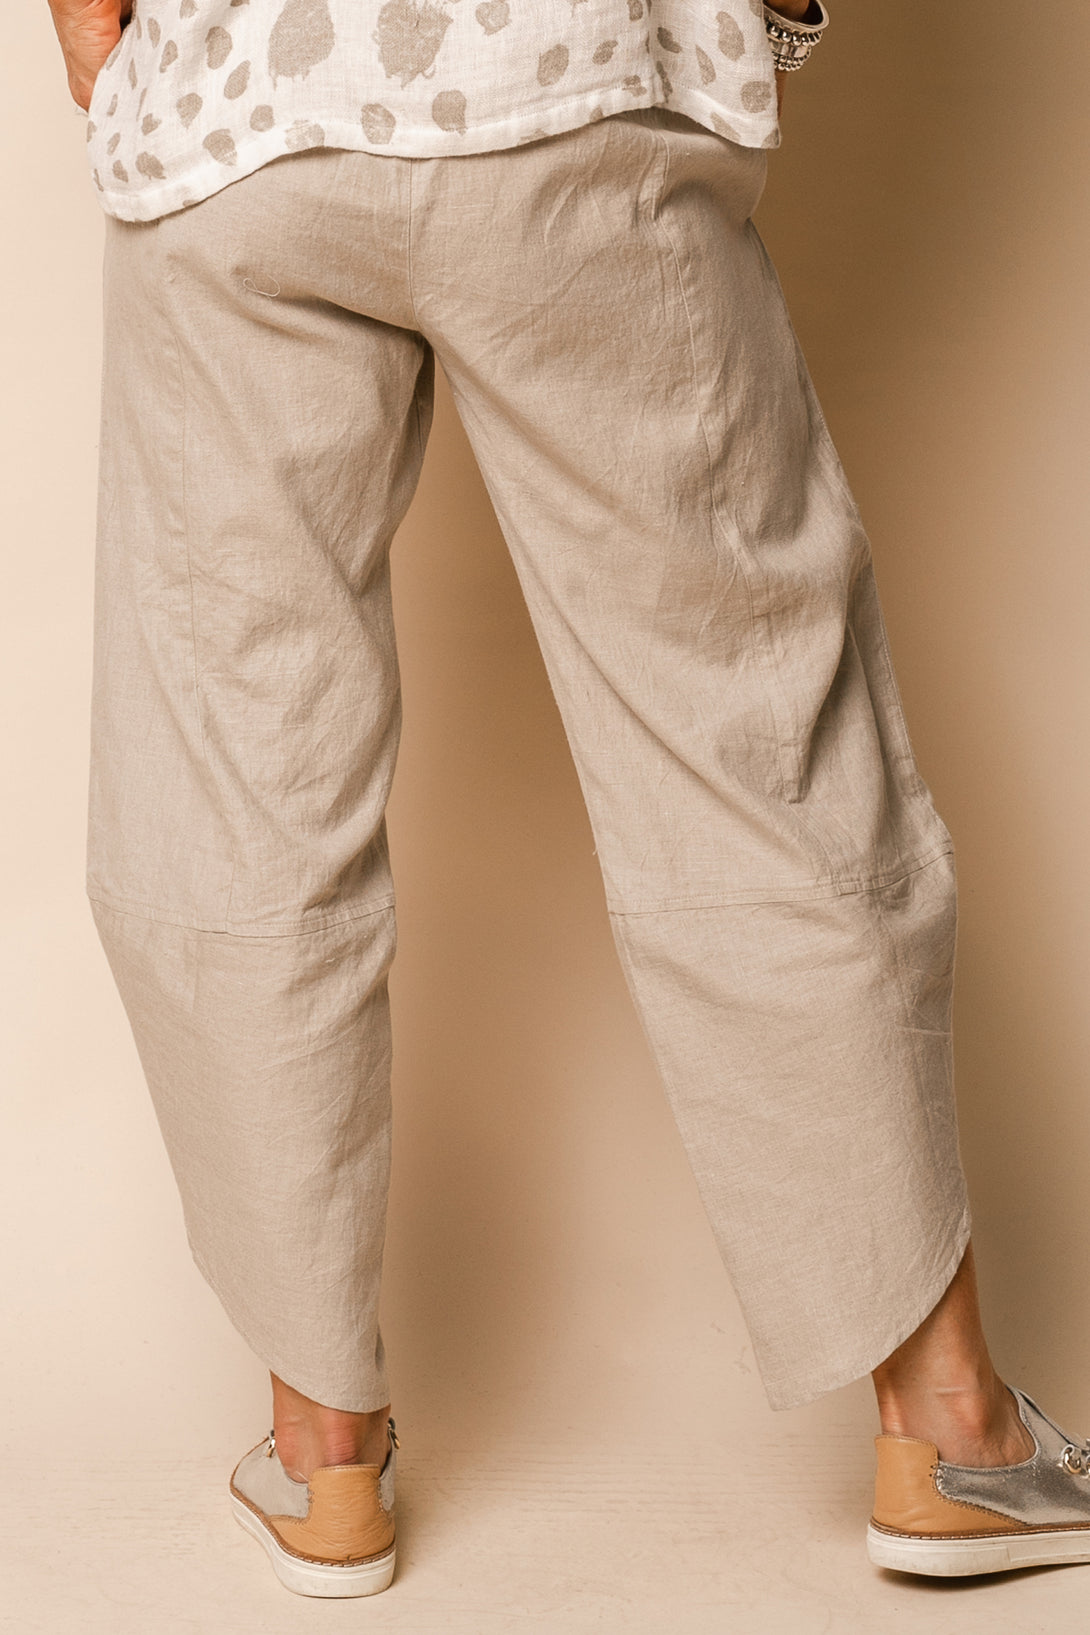 Rowen Linen Blend Pants in Latte - Imagine Fashion